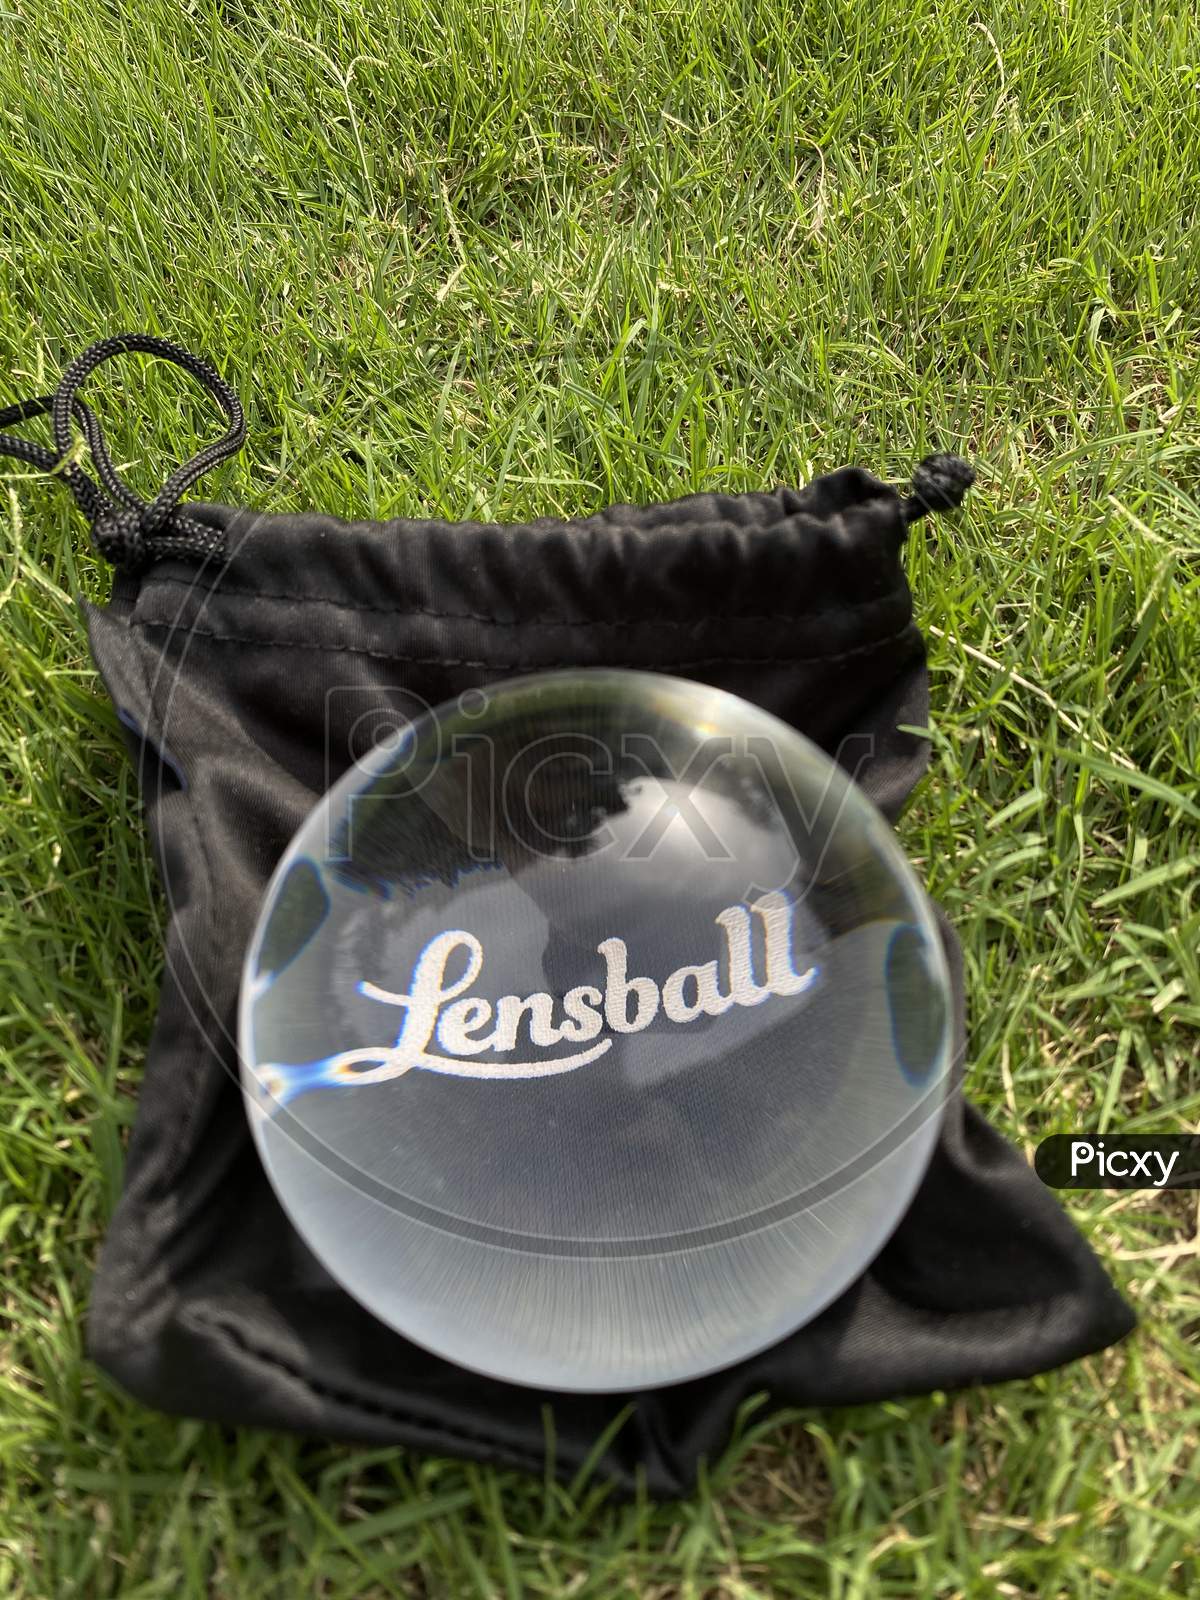 Lens ball